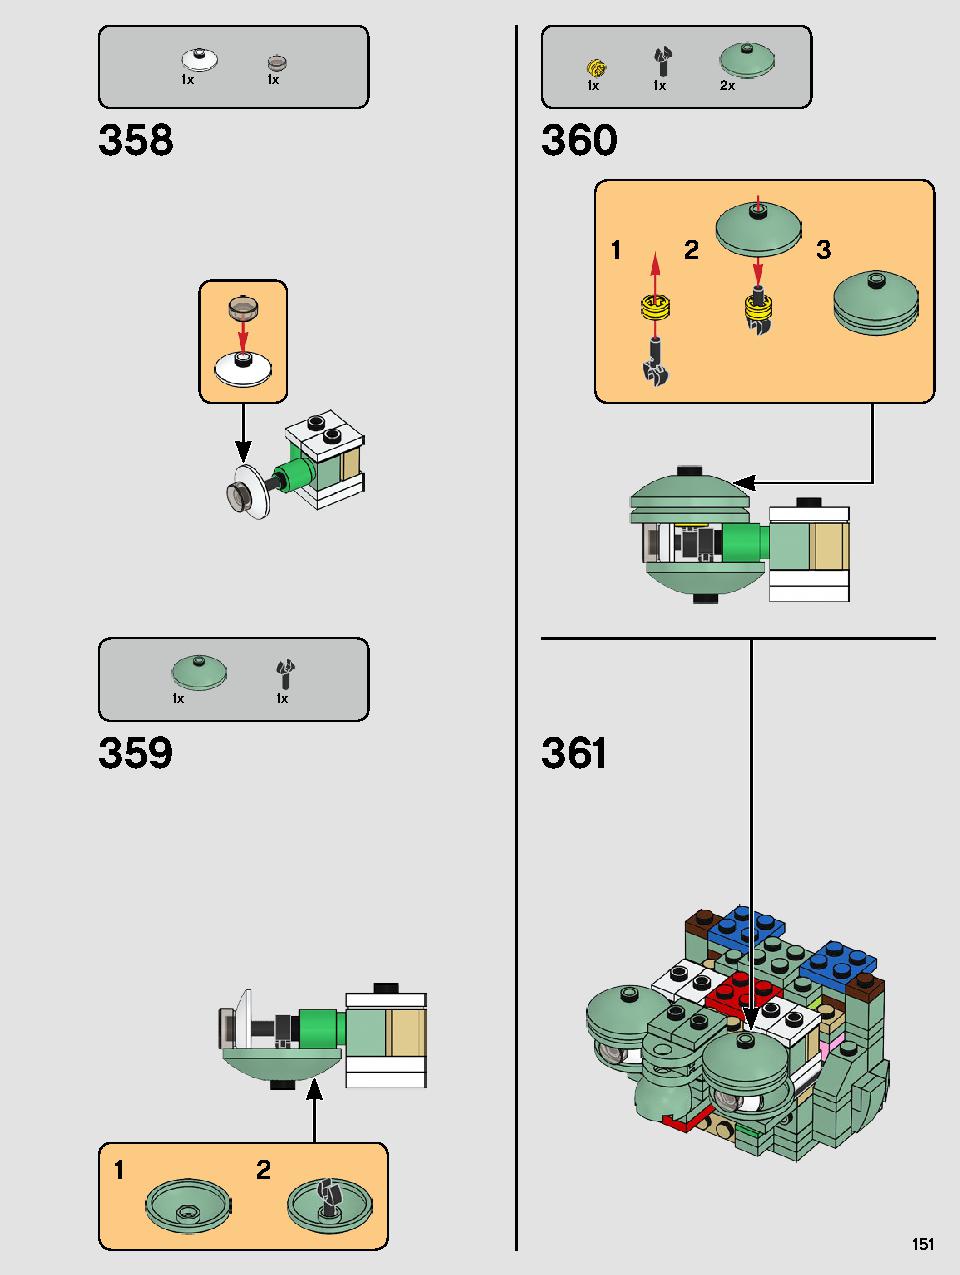 ヨーダ™ 75255 レゴの商品情報 レゴの説明書・組立方法 151 page